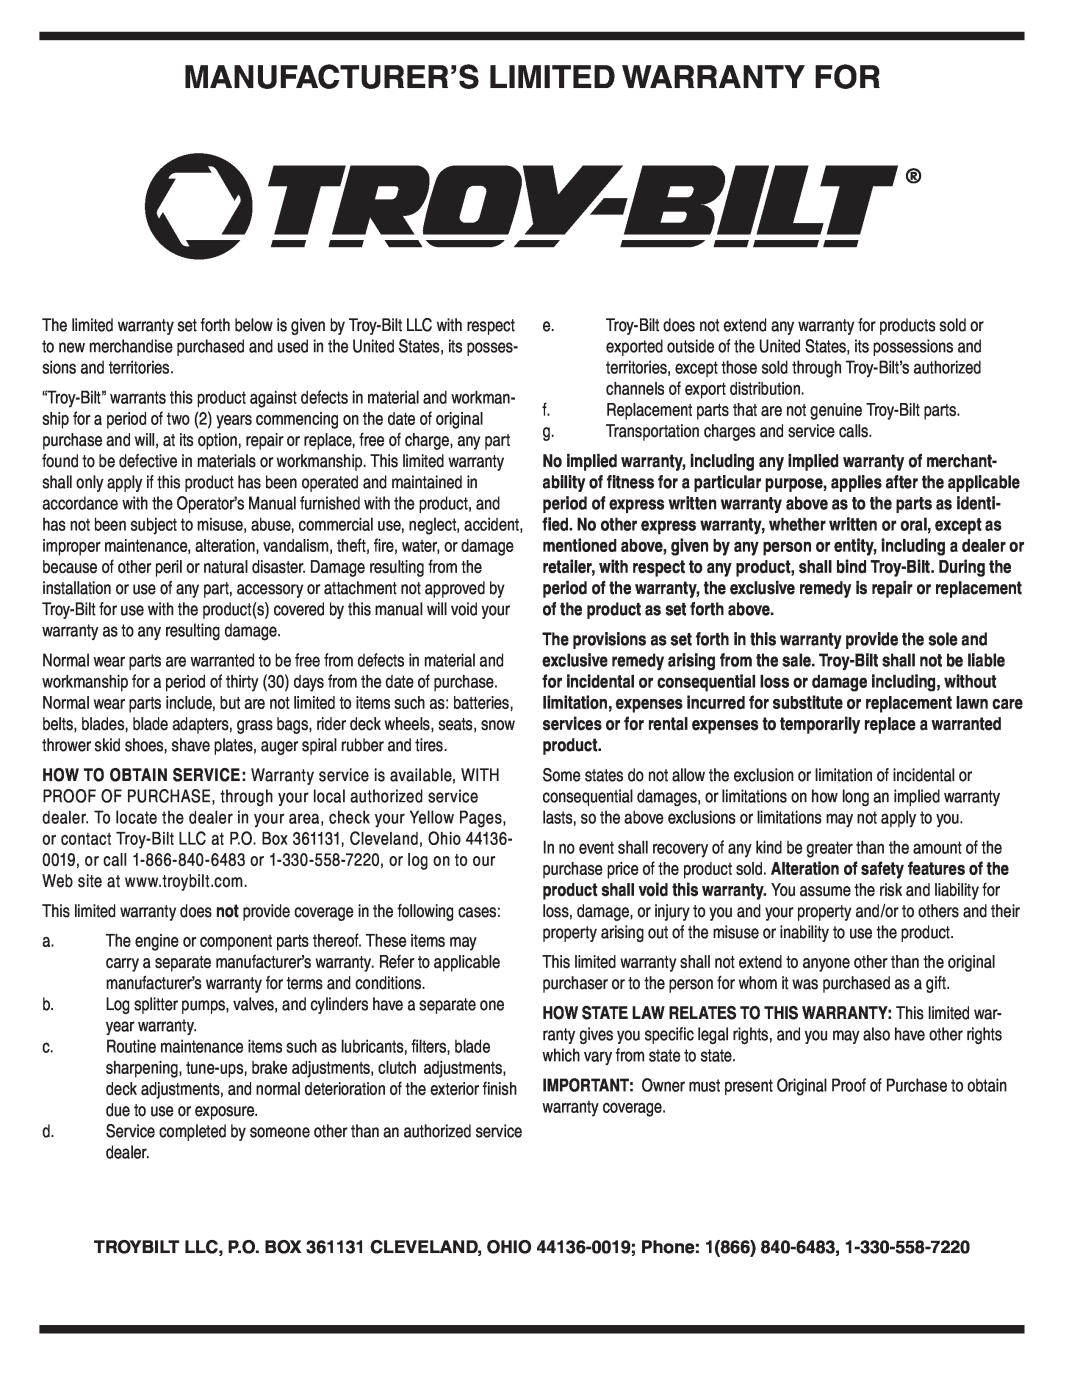 Troy-Bilt 440 warranty Manufacturer’S Limited Warranty For 